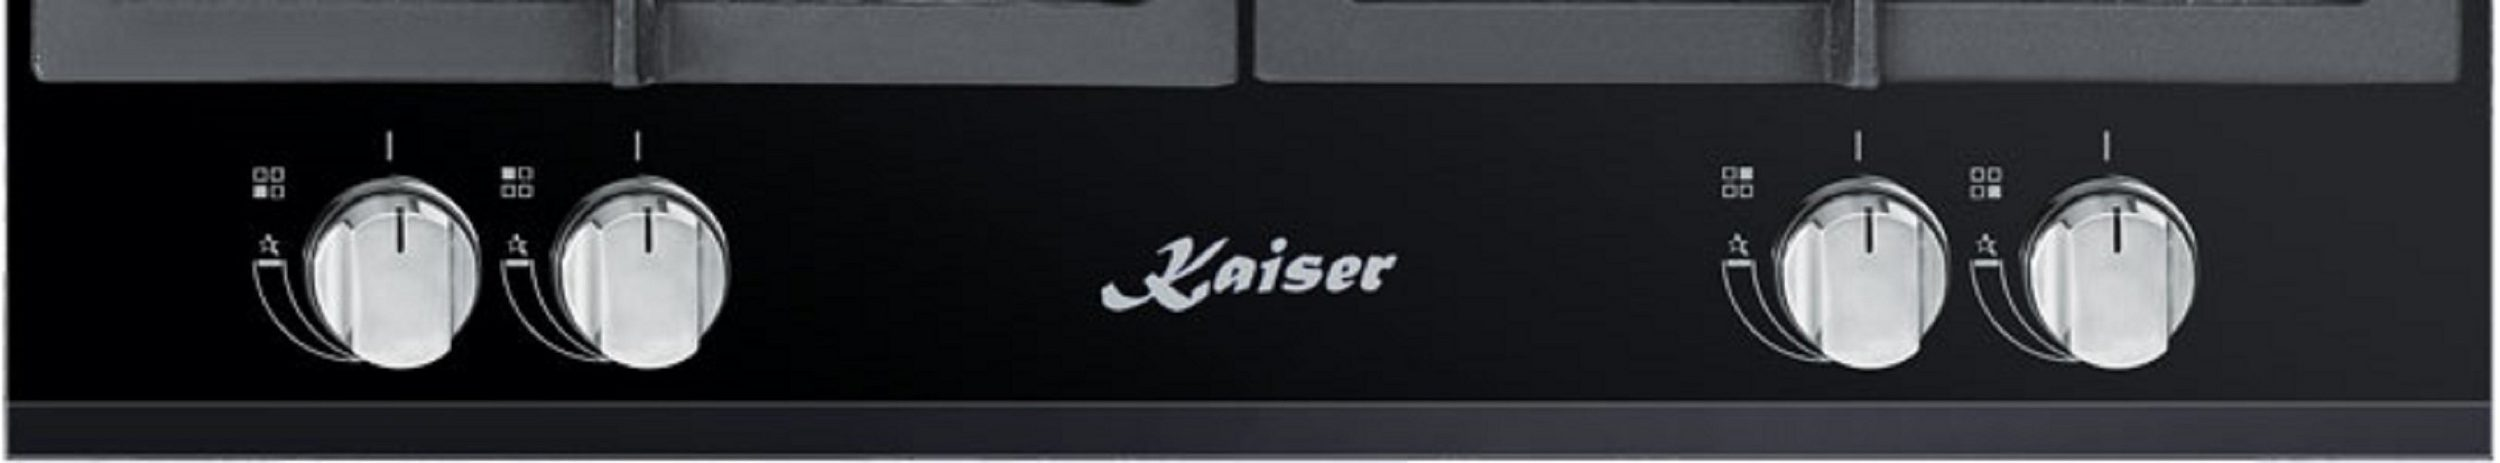 KAISER KCG 6394 4 cm (51 breit, Kochfelder) Gas